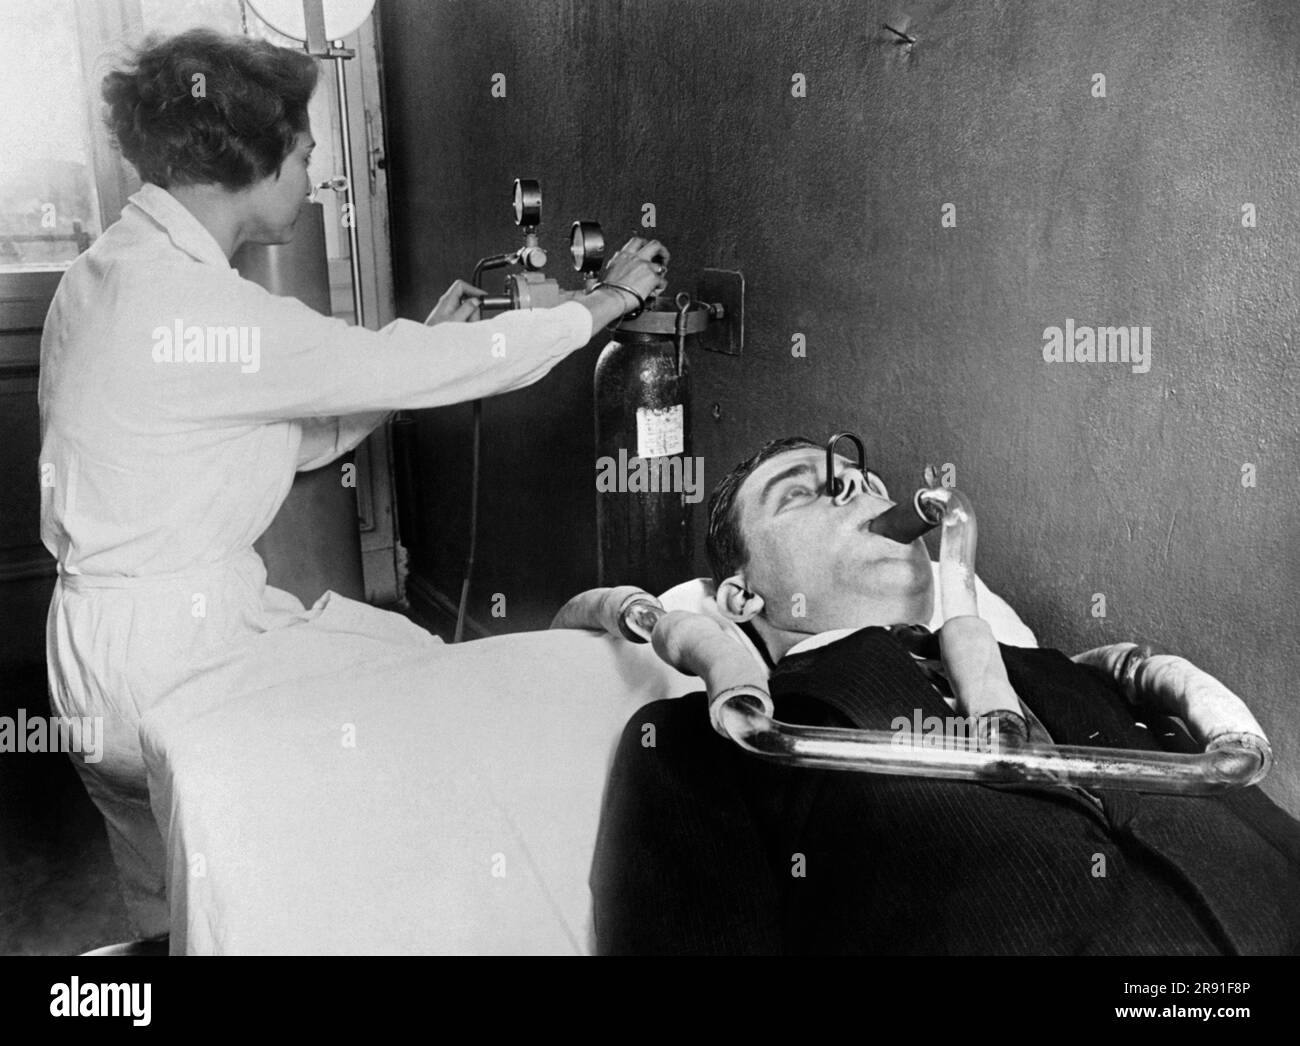 Berlino, Germania: c. 1929 ricercatori dell'Istituto batterio-fisiologico del Dr. Piorkowski di Berlino usano i metodi e le attrezzature più moderni nella ricerca sui germi in corso. Qui un ricercatore sta usando uno dei nuovi dispositivi su un paziente per cercare germi. Foto Stock